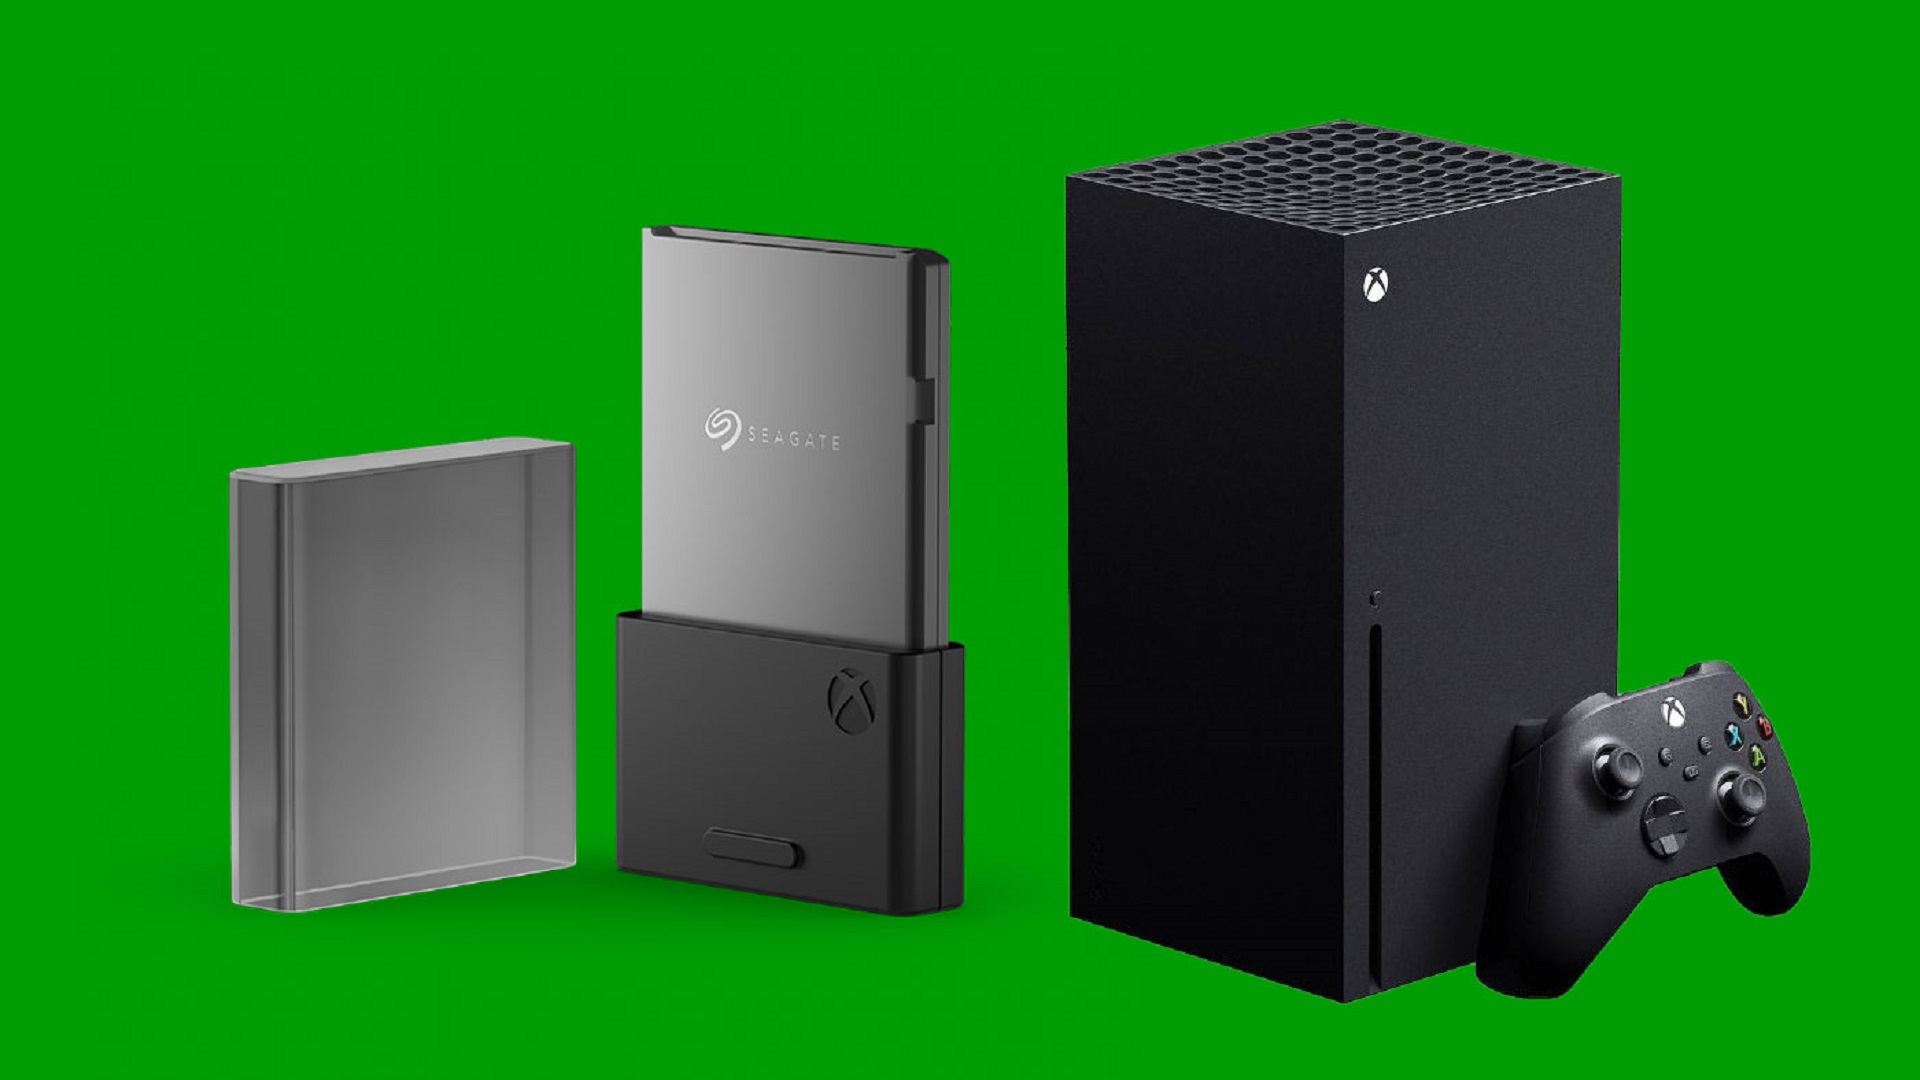 Bon plan : ajoutez du stockage à votre Xbox avec ce disque externe WD Black  de 12 To à 300 euros